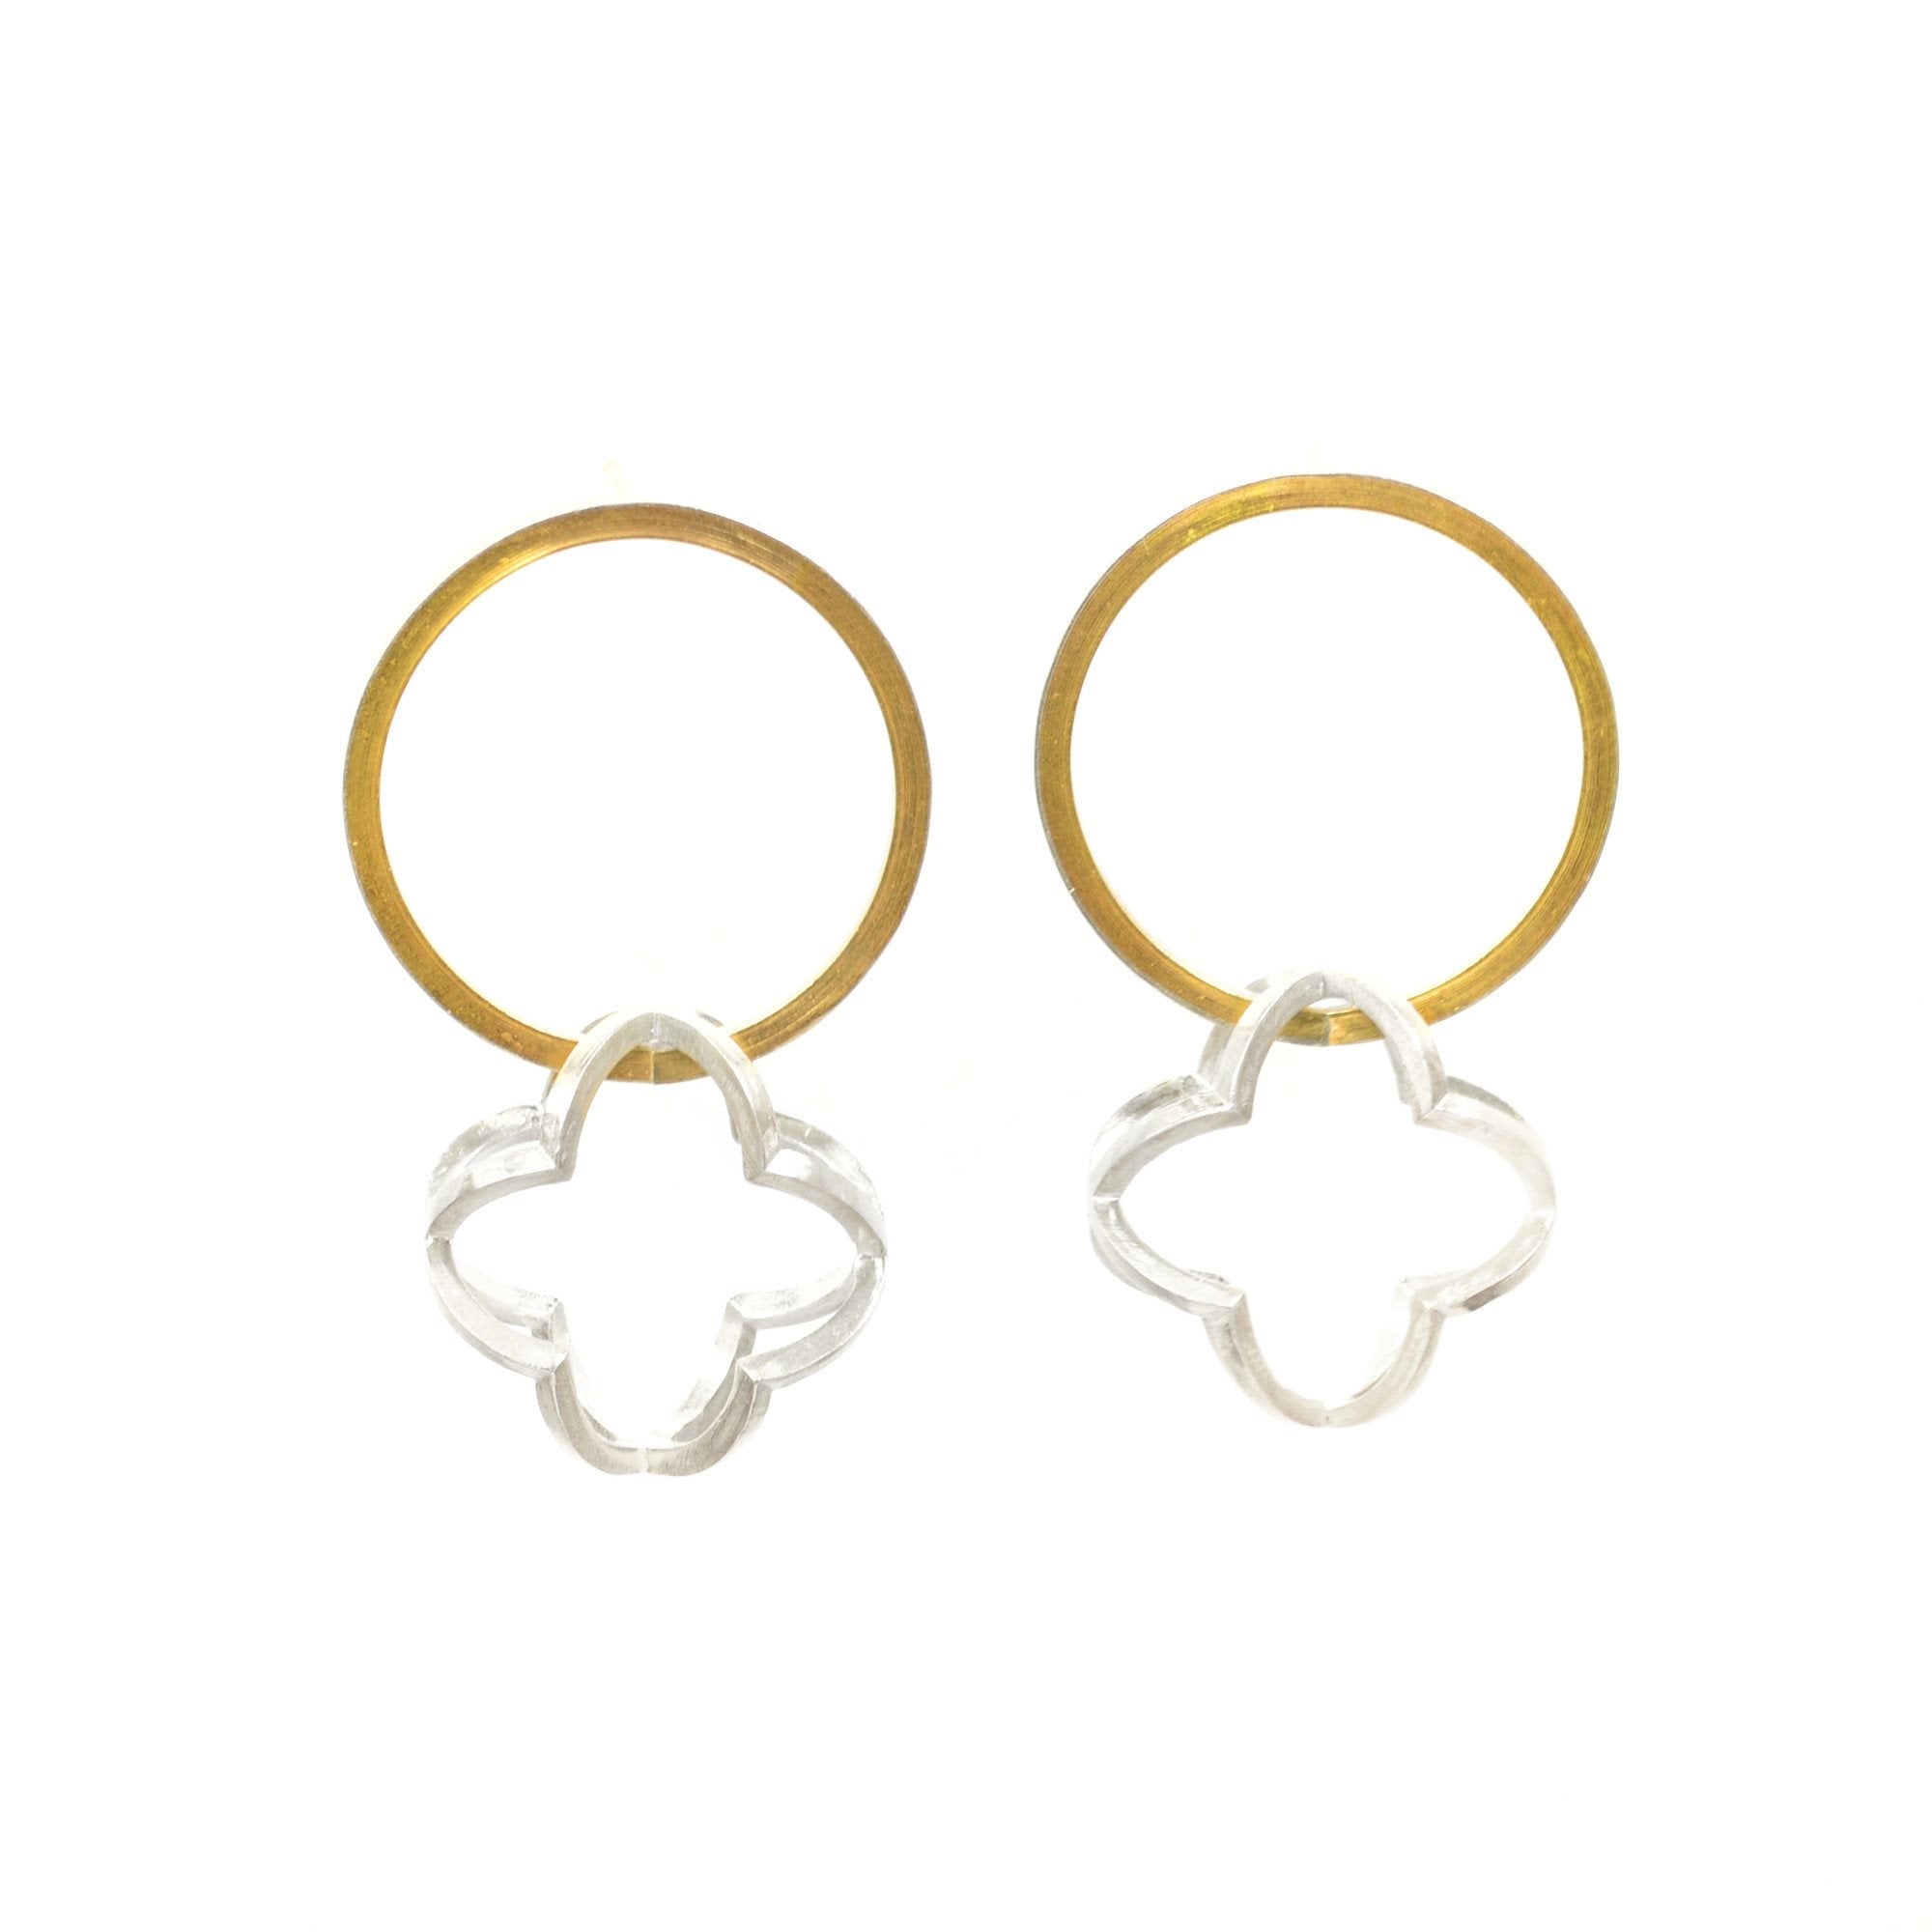 Quatrefoil Orbit Hoop Earrings in 22k gold and sterling silver